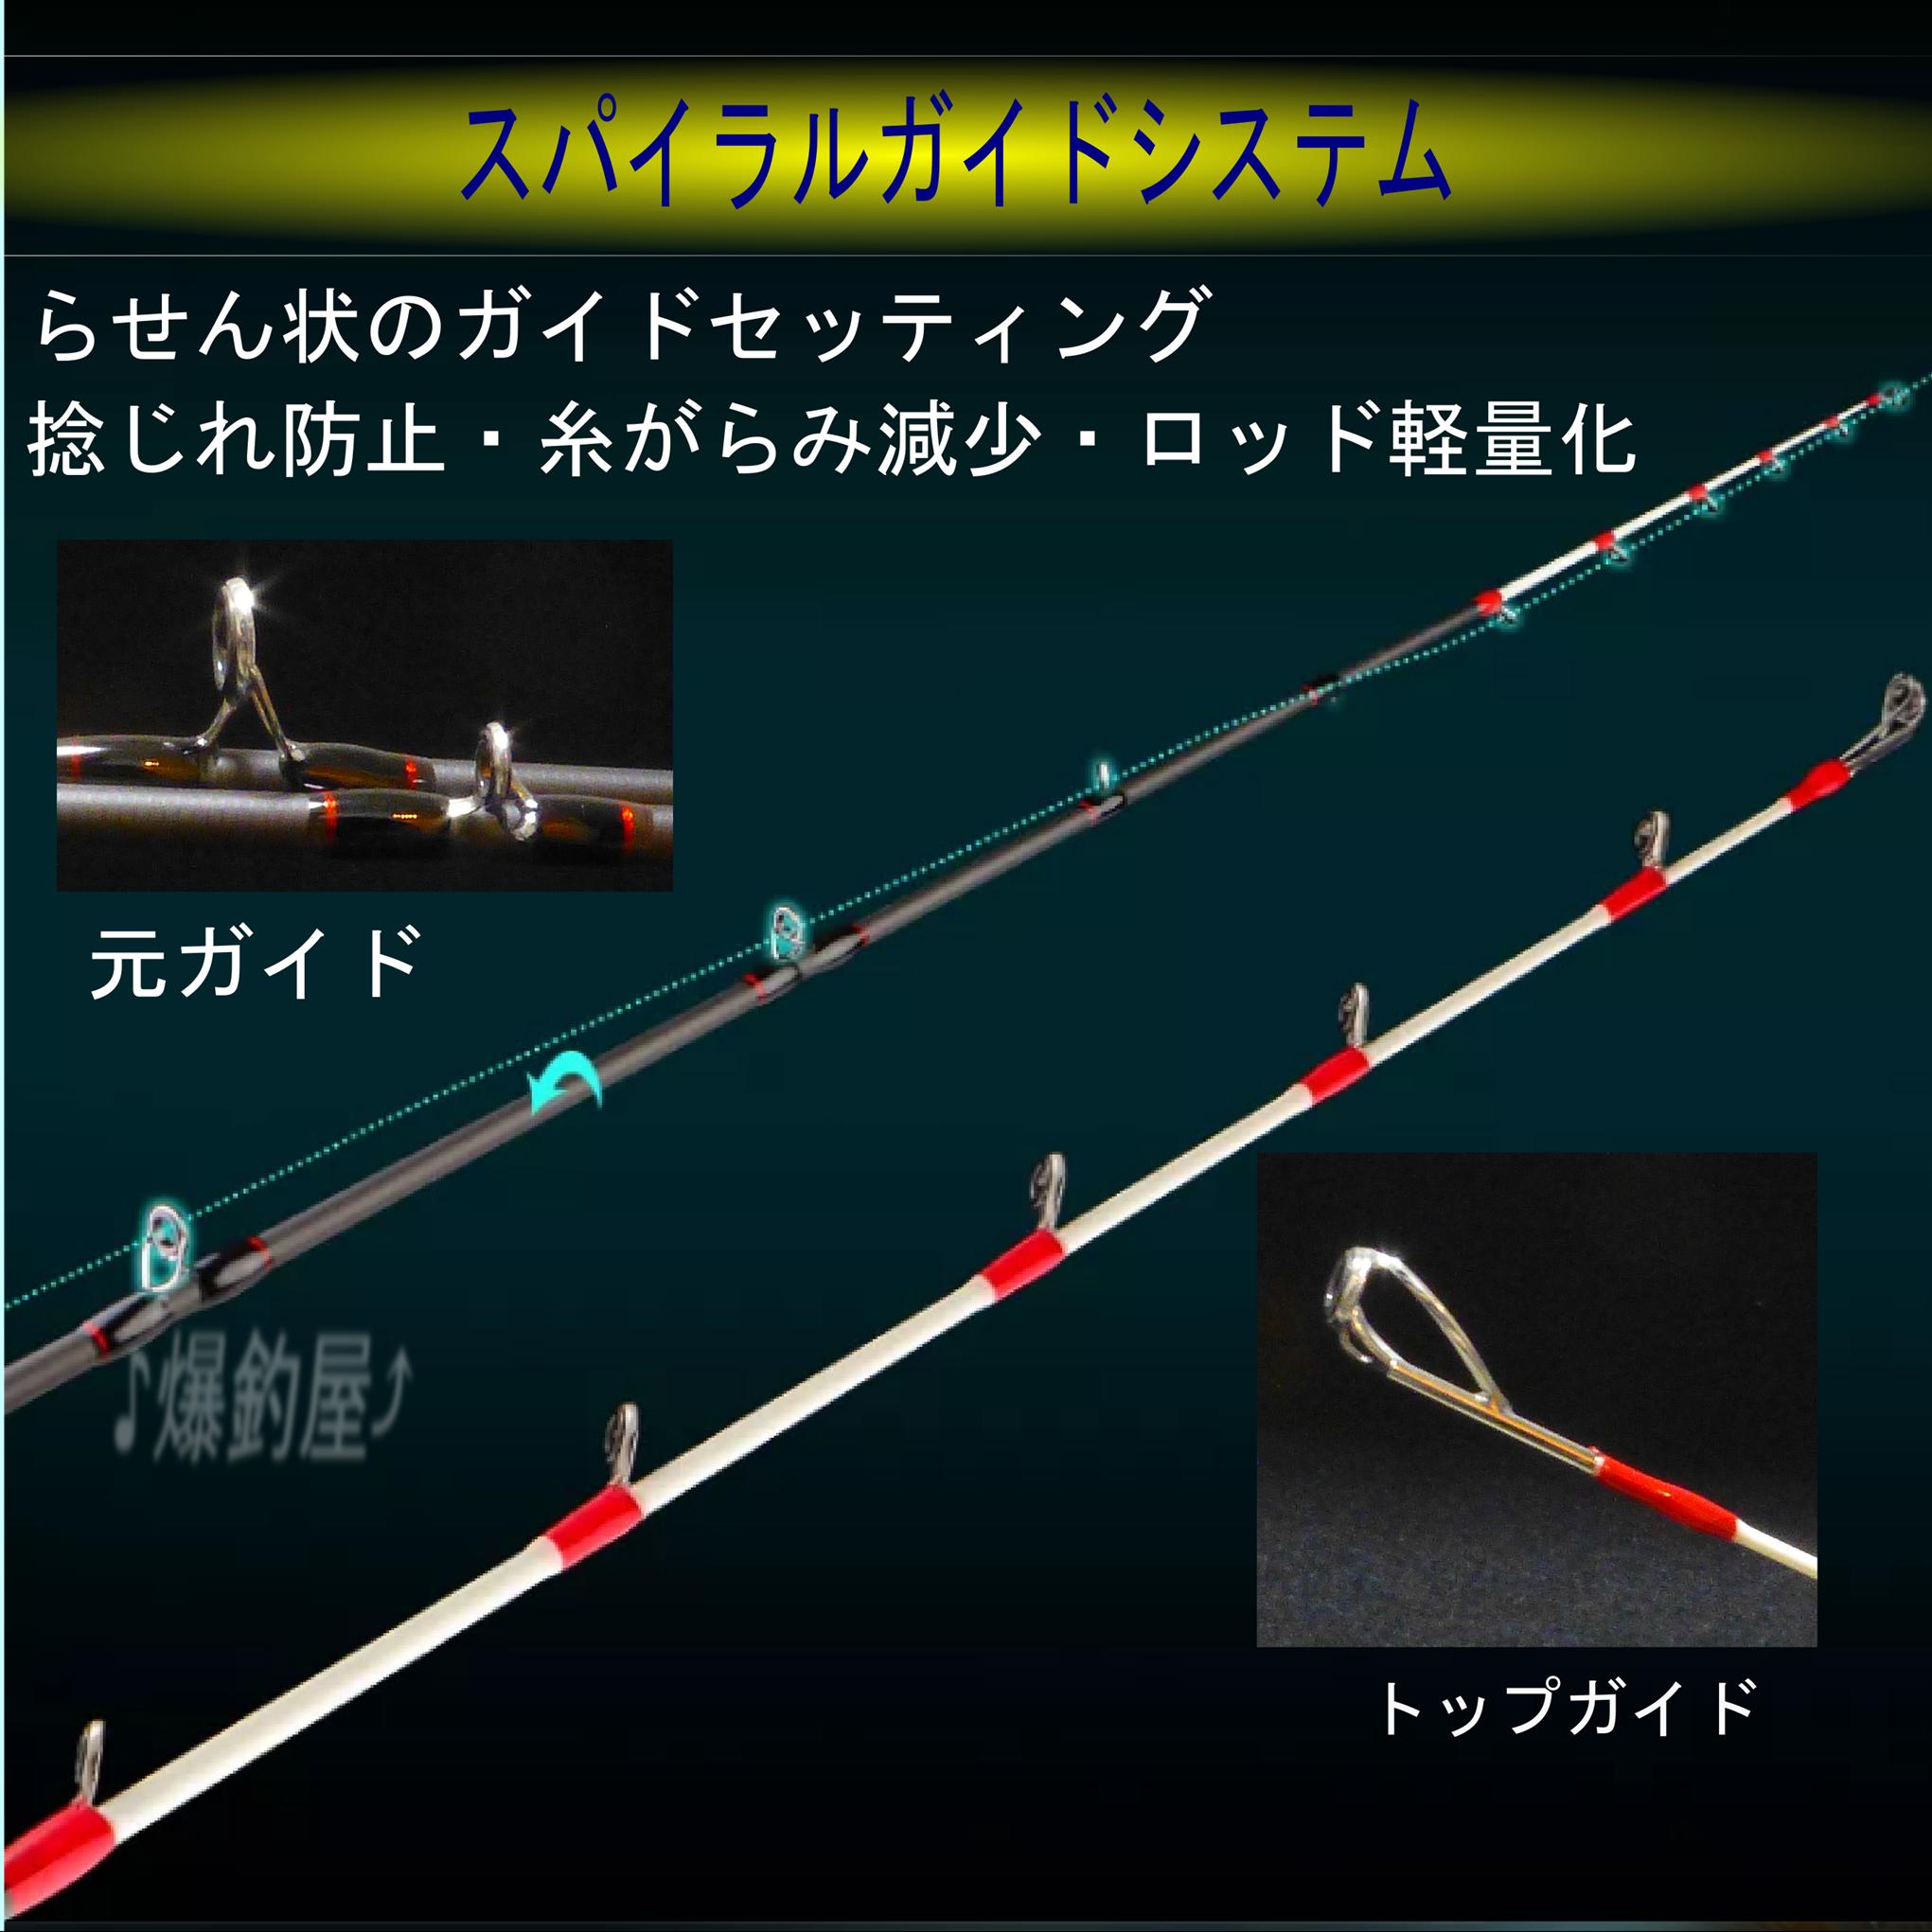 6 ft осьминог * длинный меч рыба * синий предмет * jigging для bait rod 